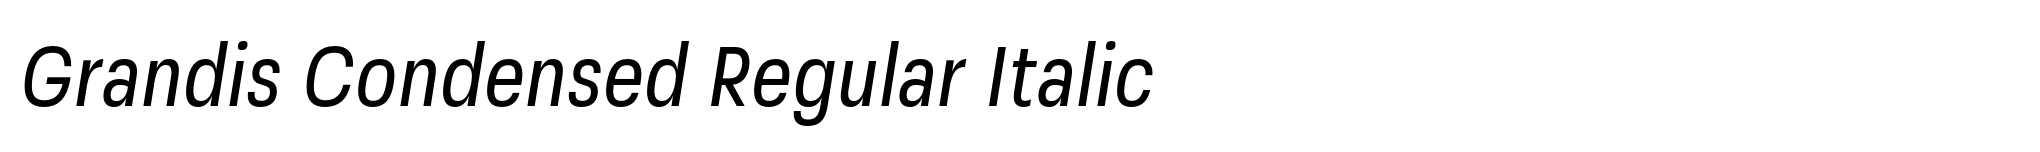 Grandis Condensed Regular Italic image